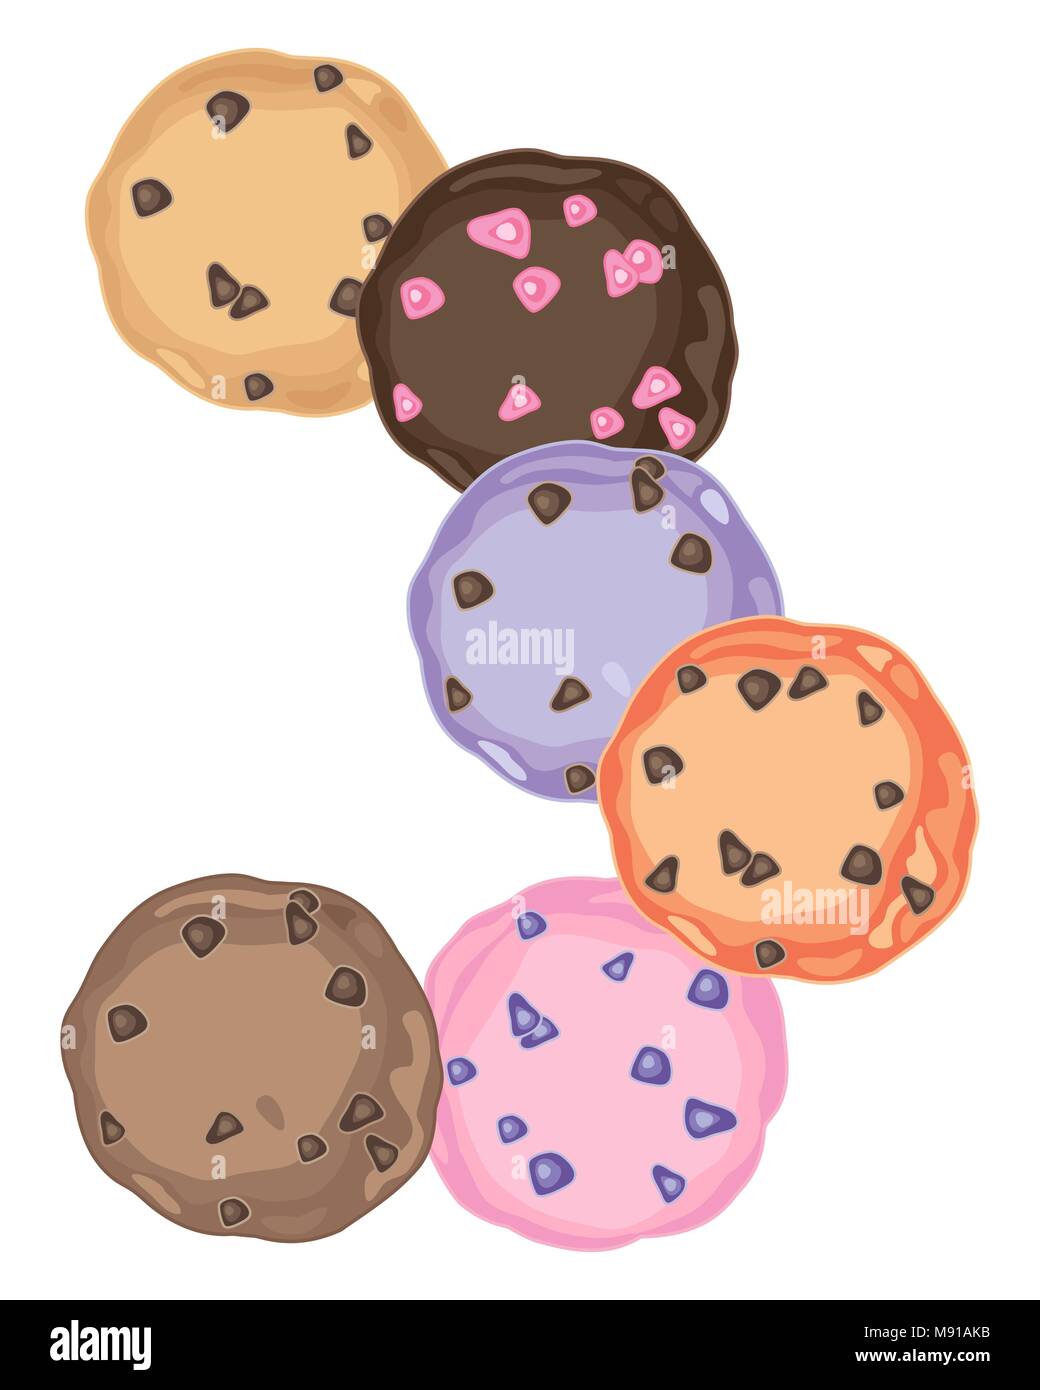 Un vecteur illustration en format eps 10 colorés de cookies avec des bonbons et chocolat dans une conception abstraite sur fond blanc Illustration de Vecteur